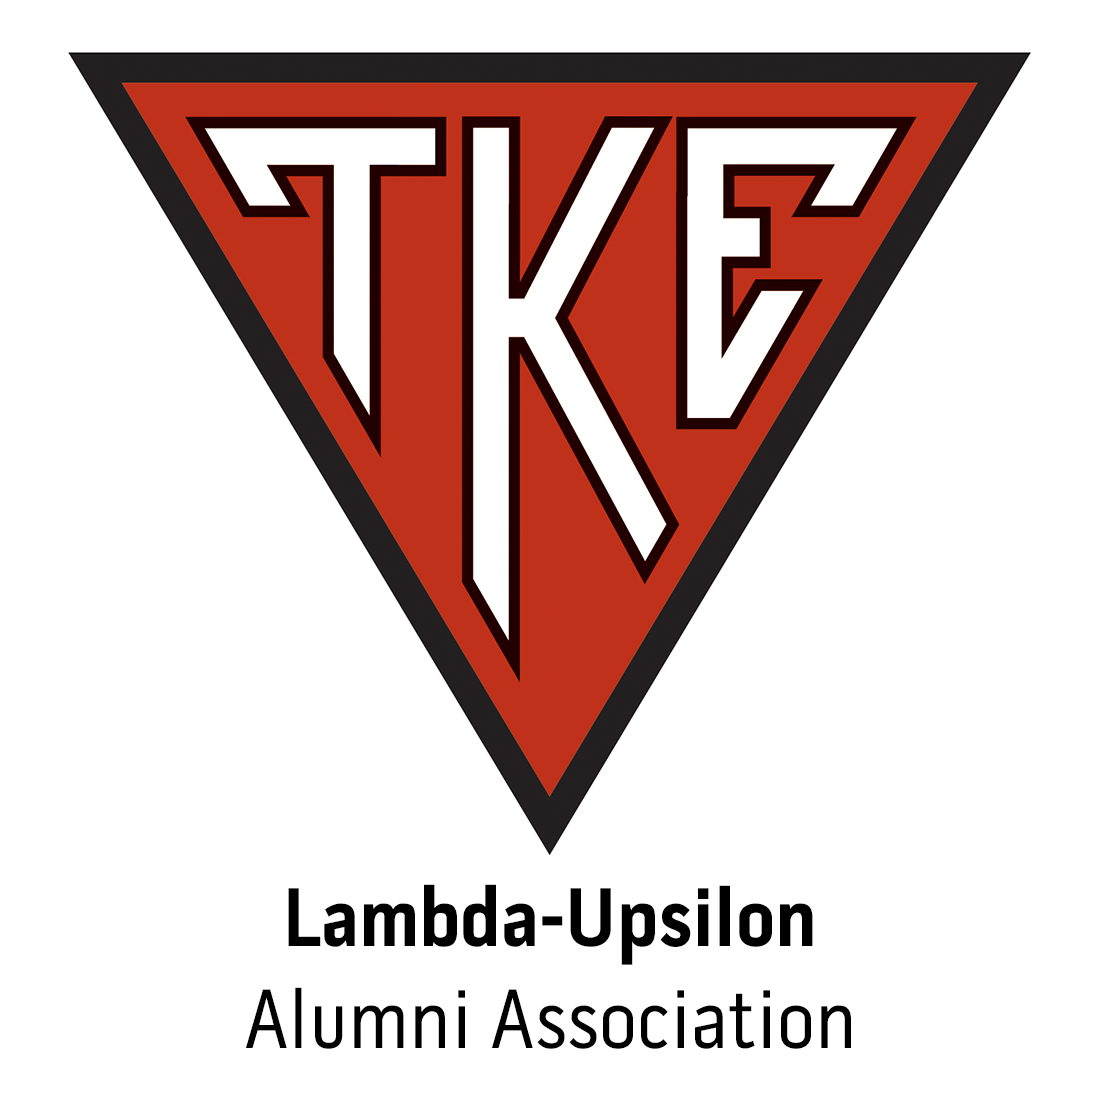 Lambda-Upsilon Alumni Association at Georgia Southern University